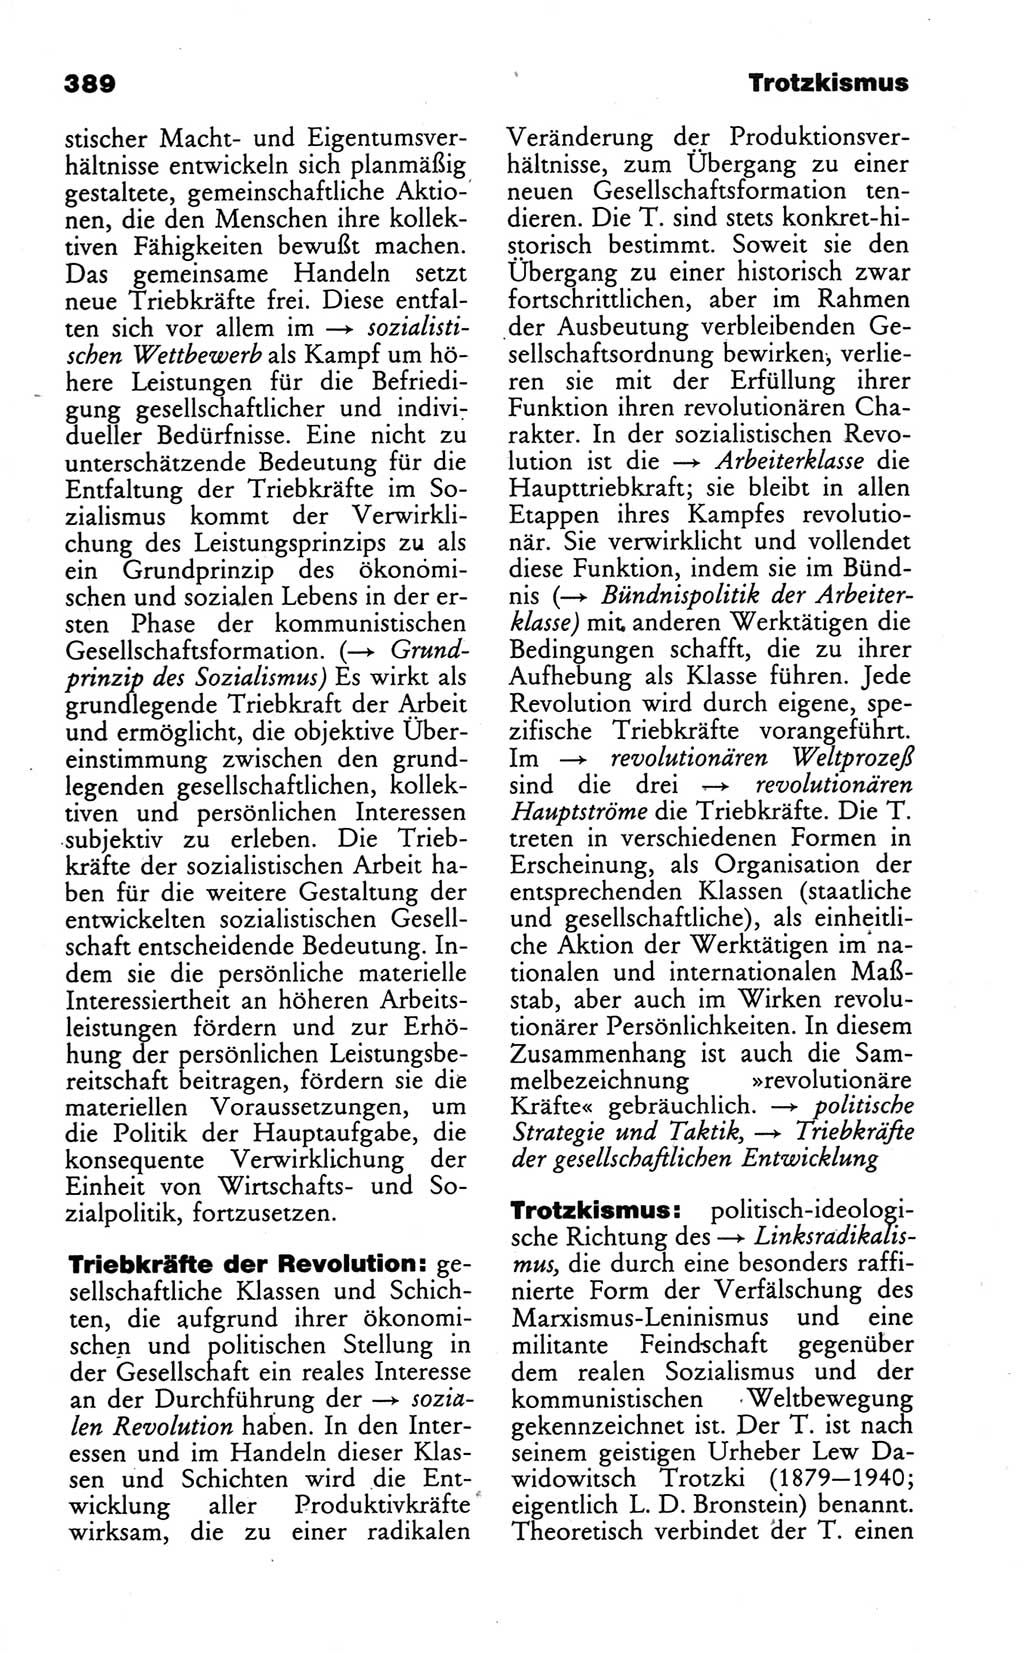 Wörterbuch des wissenschaftlichen Kommunismus [Deutsche Demokratische Republik (DDR)] 1986, Seite 389 (Wb. wiss. Komm. DDR 1986, S. 389)